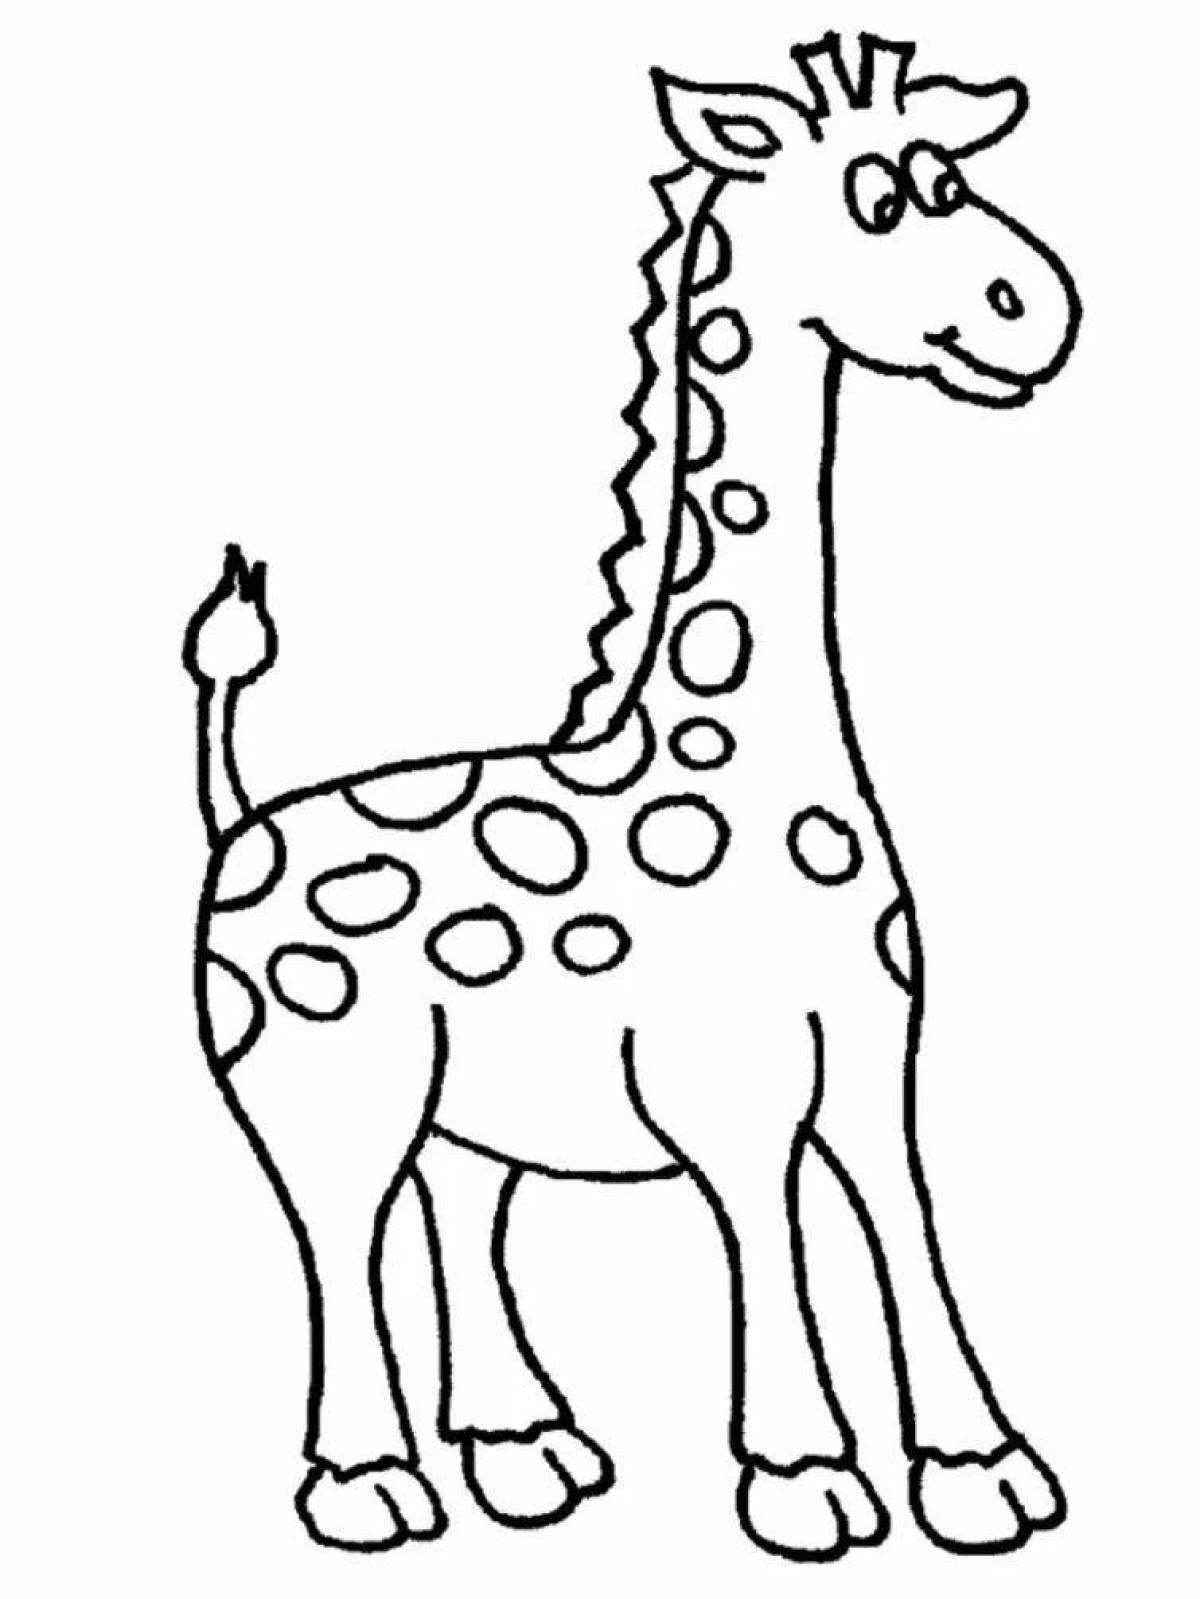 Delicate giraffe coloring